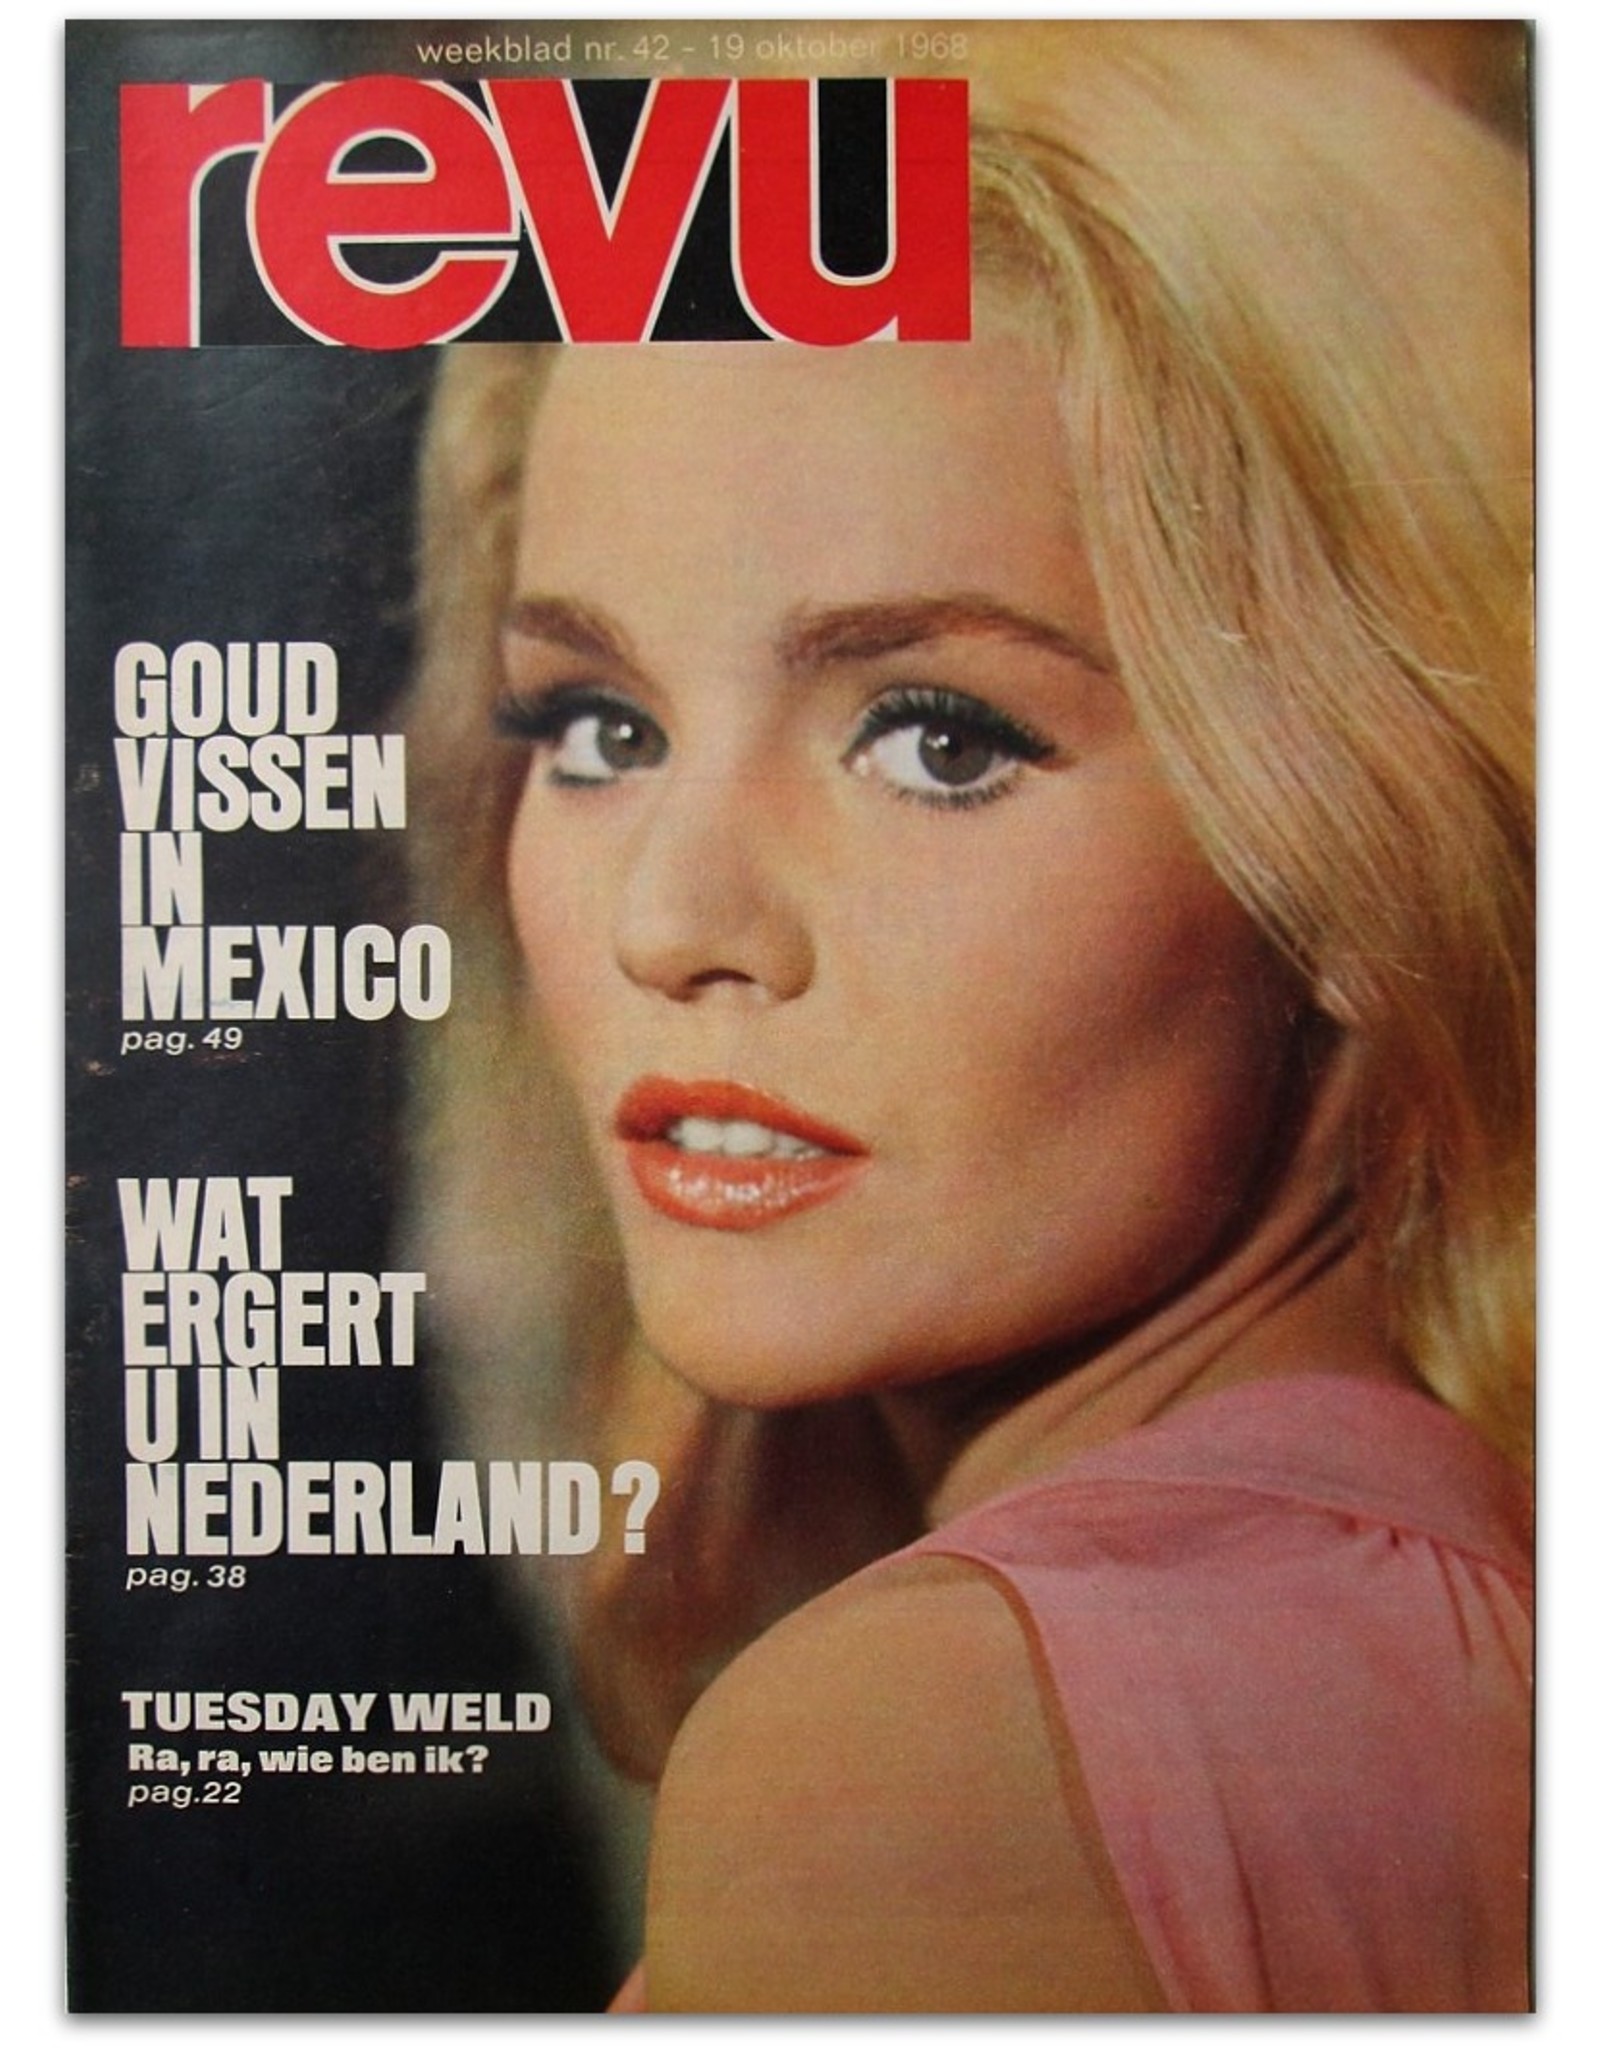 [The first 10 issues of] Nieuwe Revu. Goed voor twee. Weekblad Nr. 43 [to 52] 1968